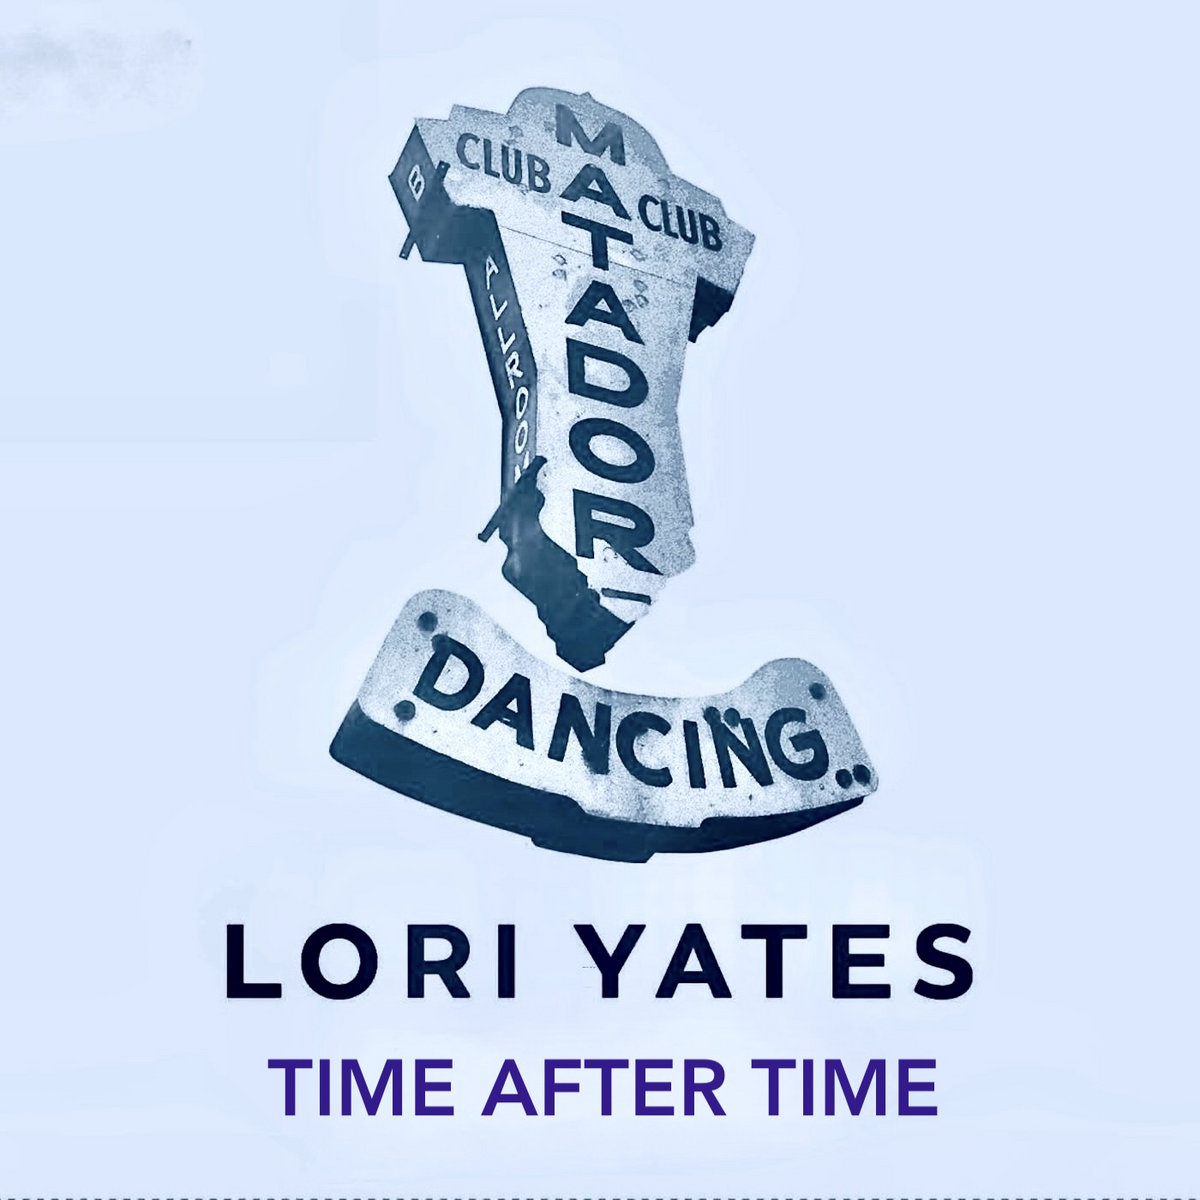 Lori Yates “Time After Time” single artwork